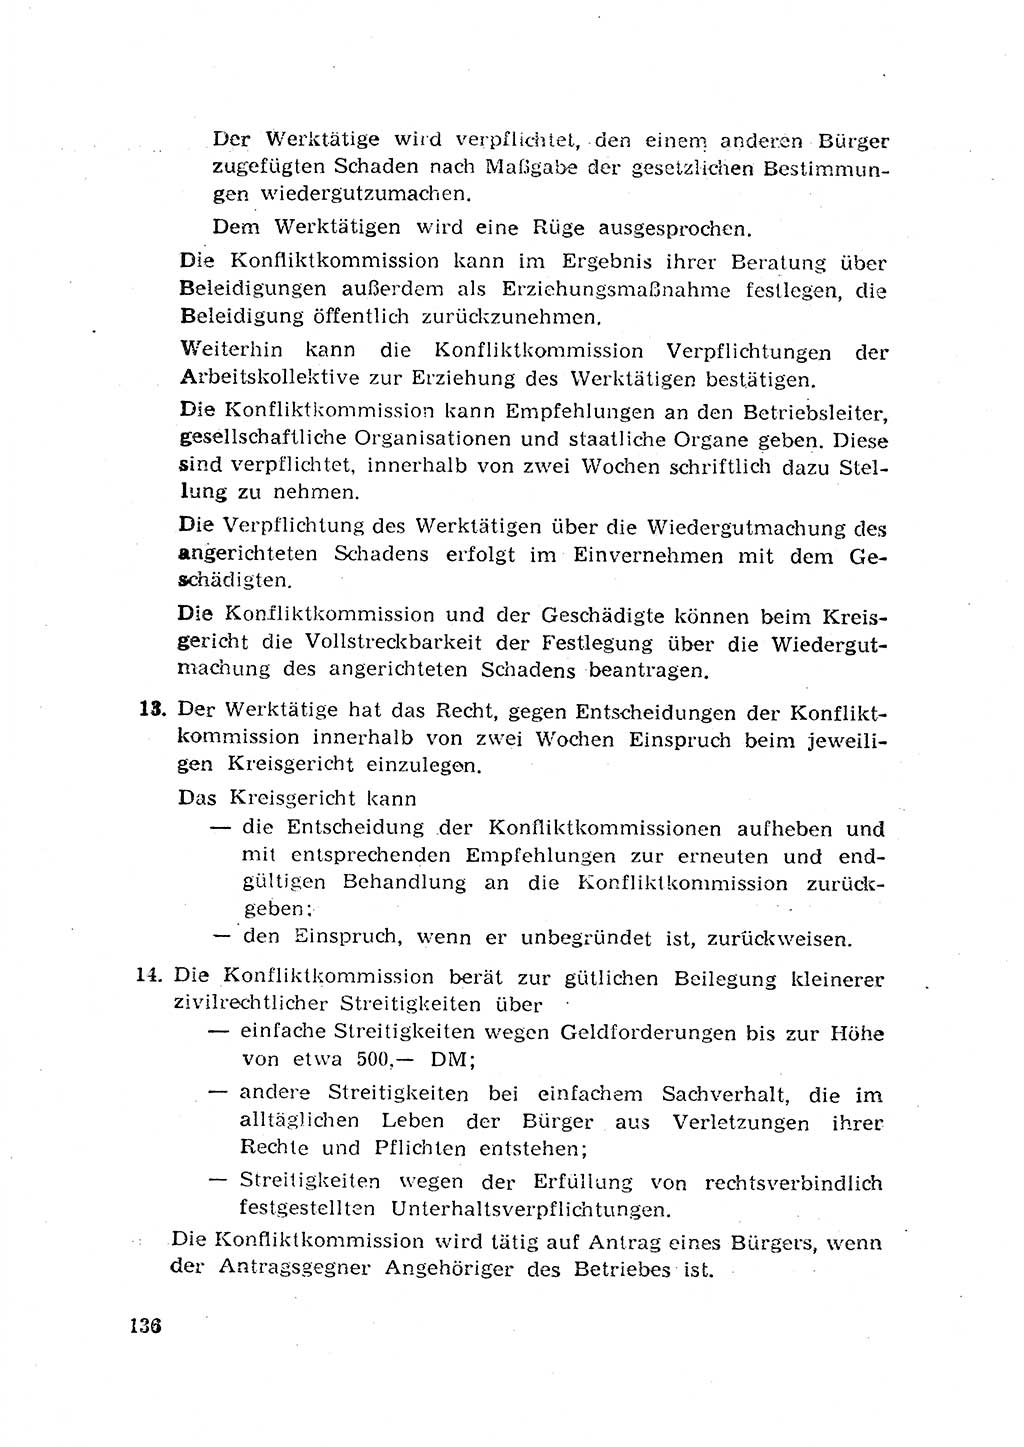 Rechtspflegeerlaß [Deutsche Demokratische Republik (DDR)] 1963, Seite 136 (R.-Pfl.-Erl. DDR 1963, S. 136)